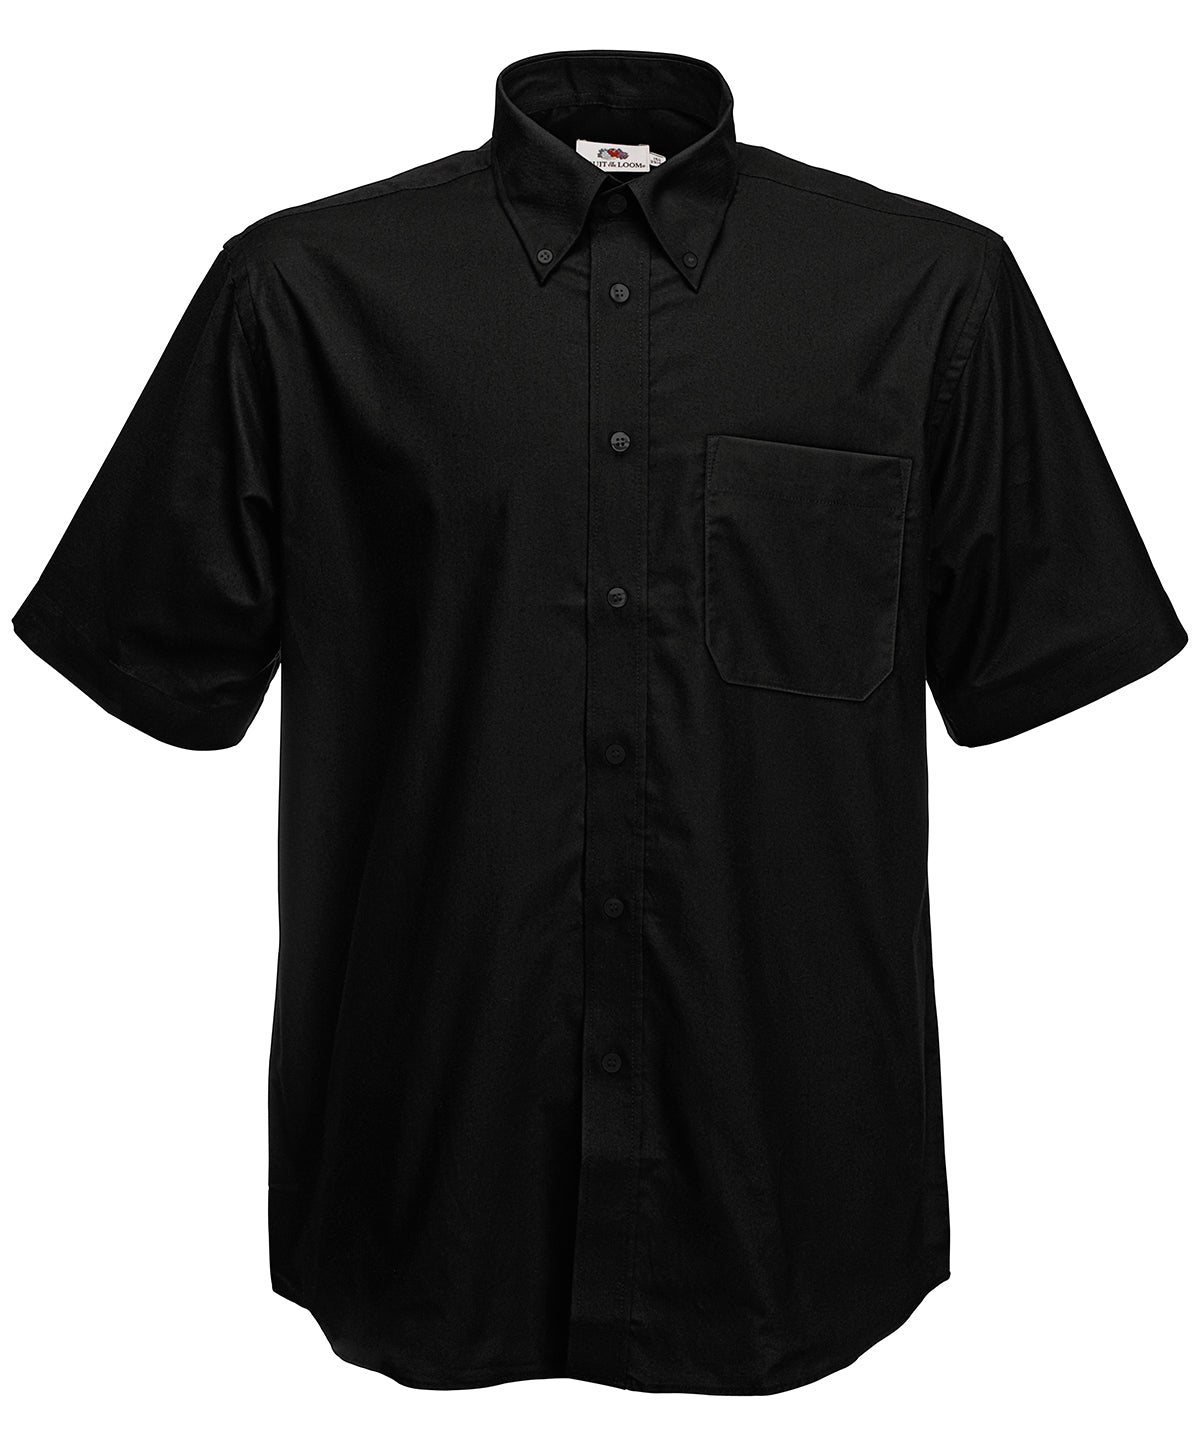 Bolir - Oxford Short Sleeve Shirt